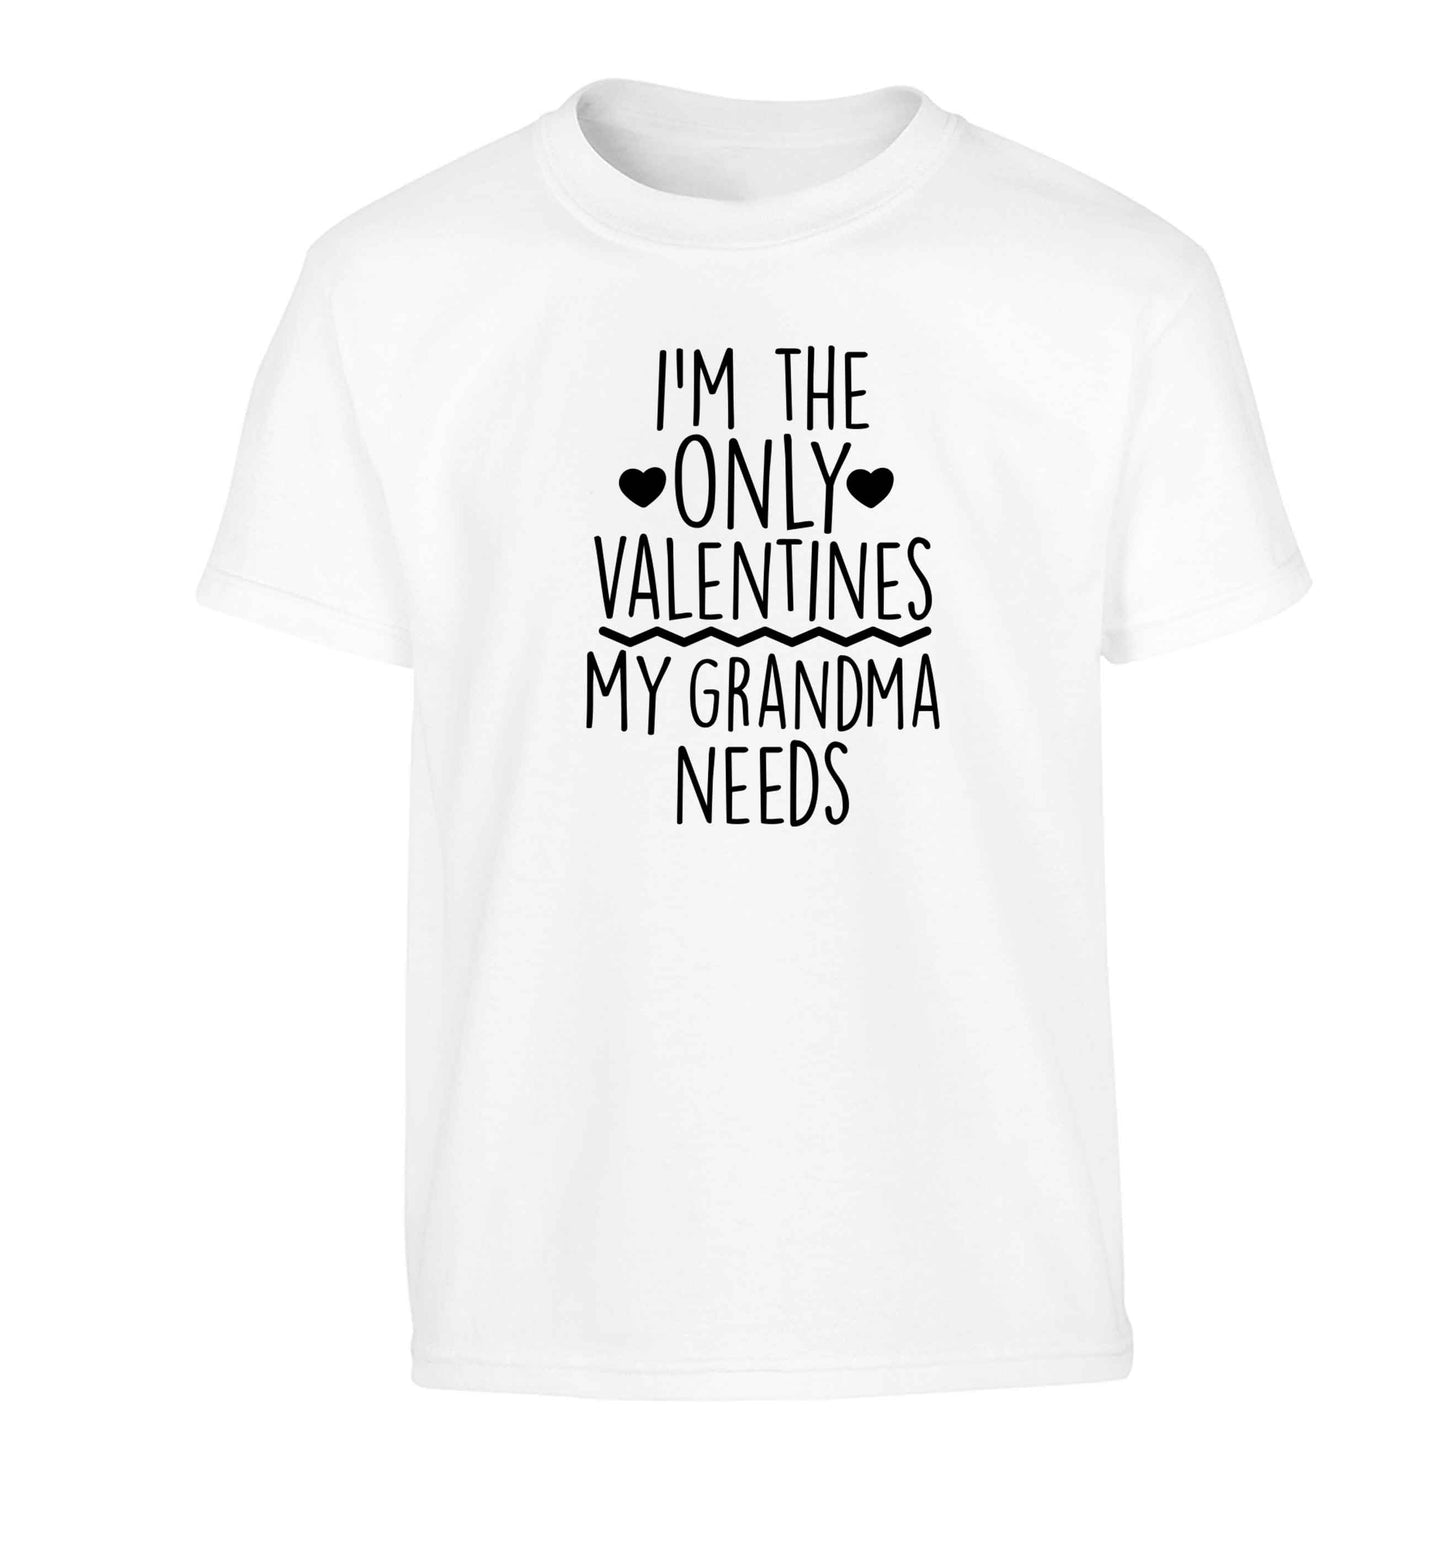 I'm the only valentines my grandma needs Children's white Tshirt 12-13 Years